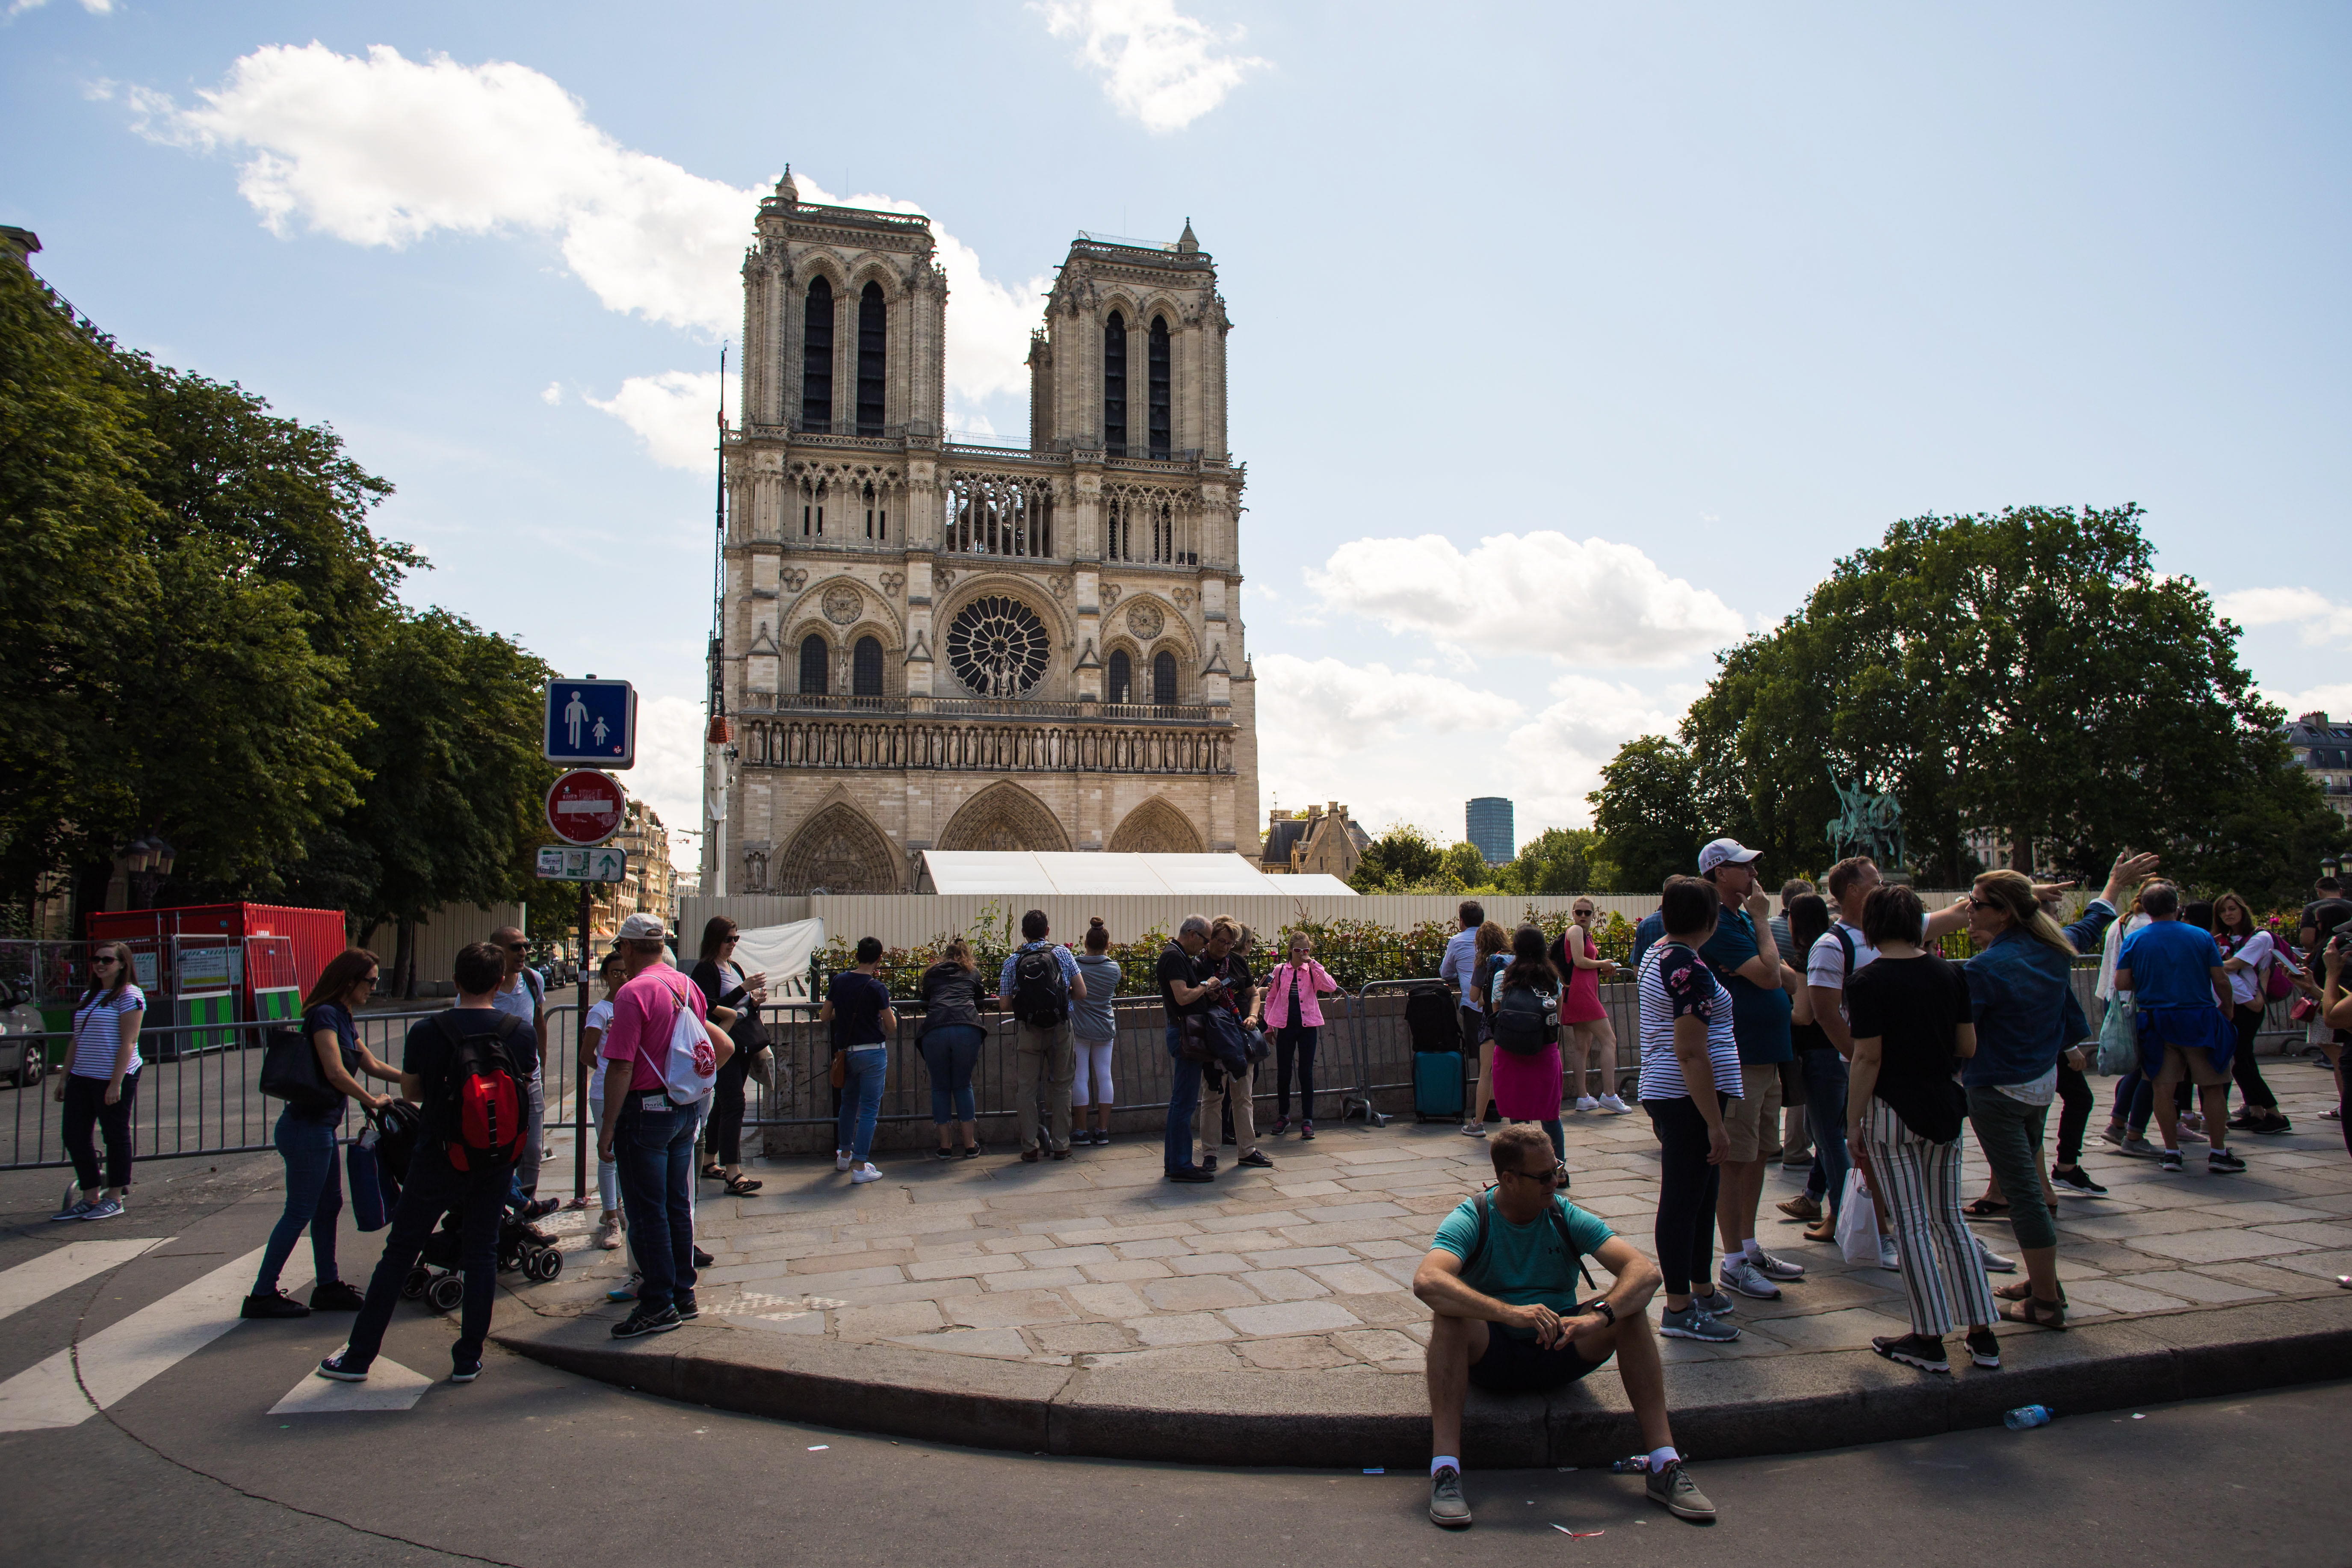 "Notre Dame está más viva" y oficiará su primera misa en dos meses. Foto Prensa Libre: Christophe Petit Tesson / EFE.